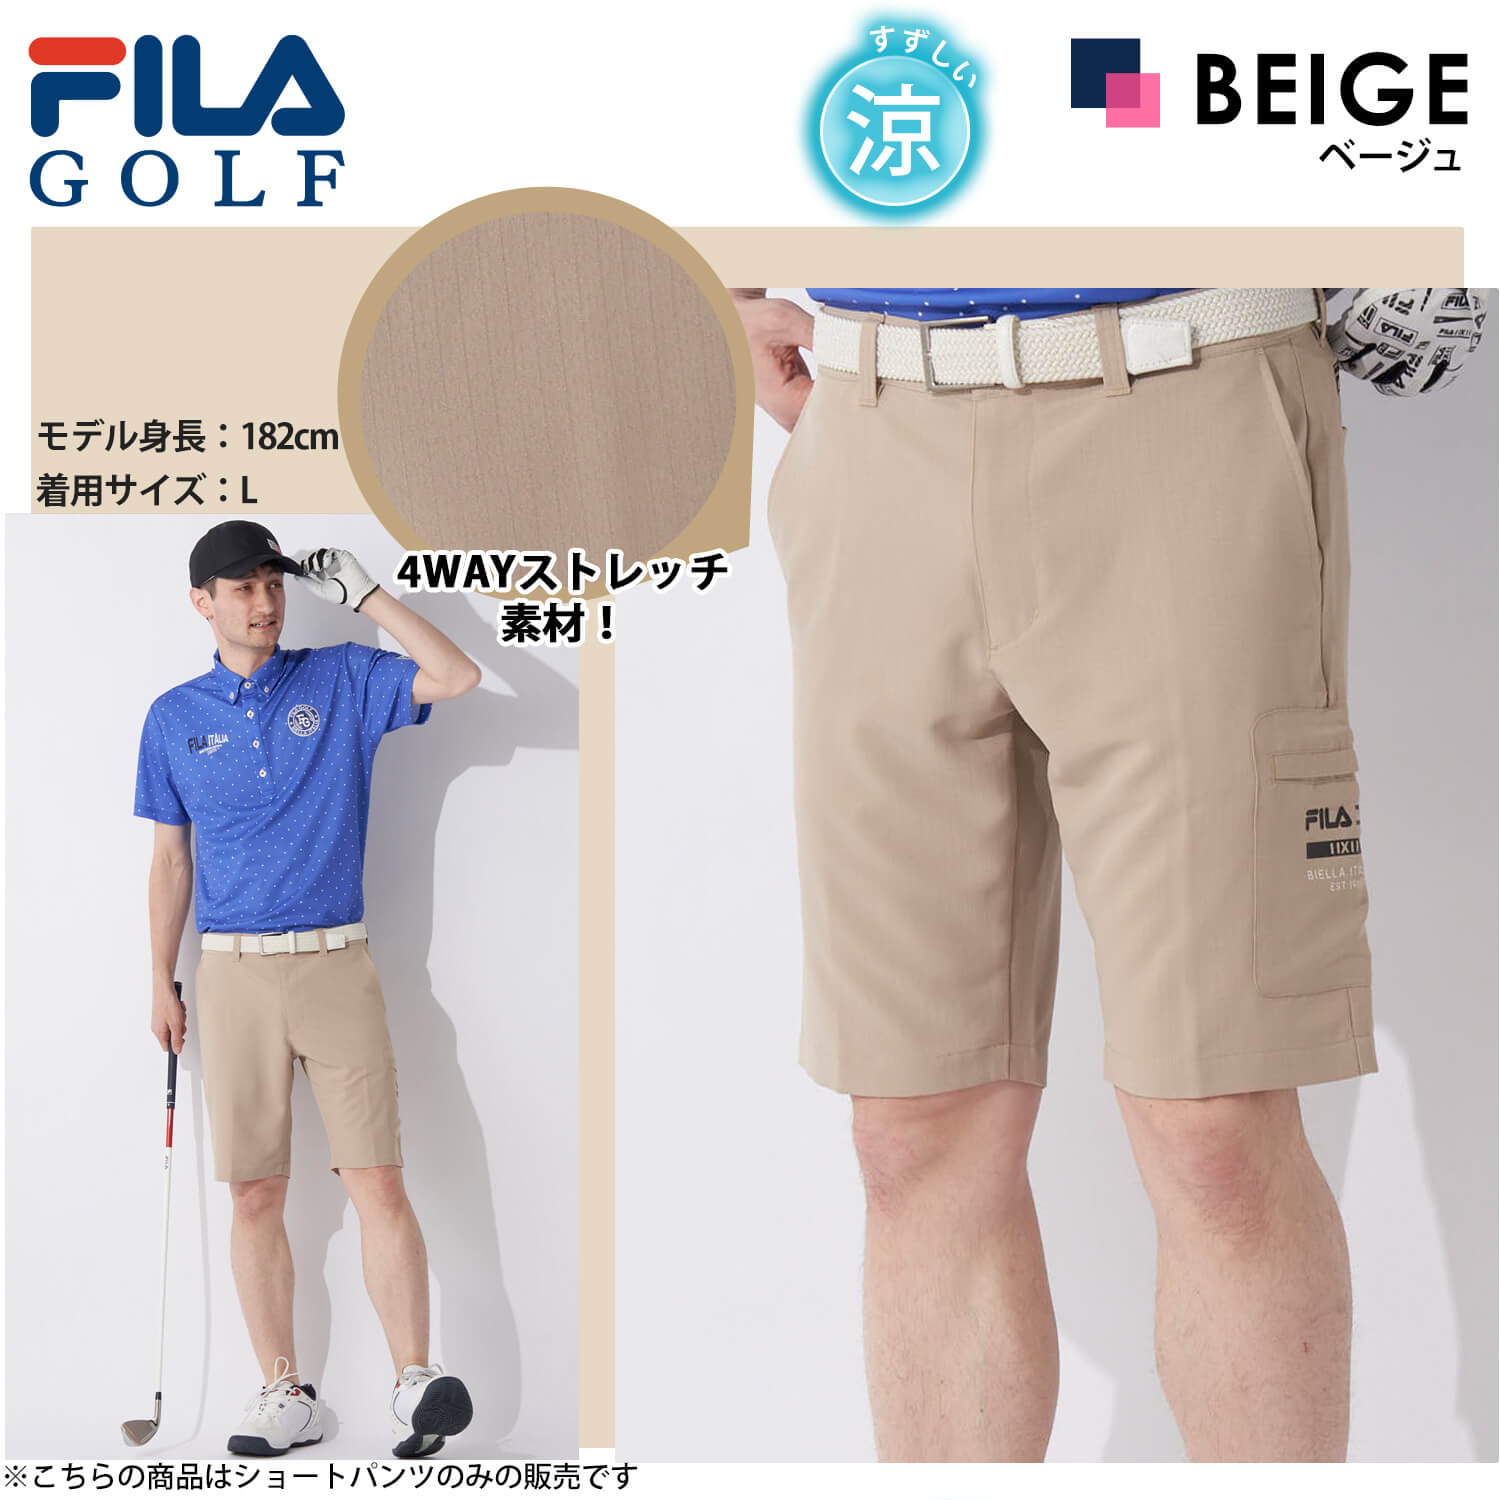 FILA GOLF フィラゴルフ ゴルフウェア ハーフパンツ メンズ ショートパンツ カーゴパンツ ...